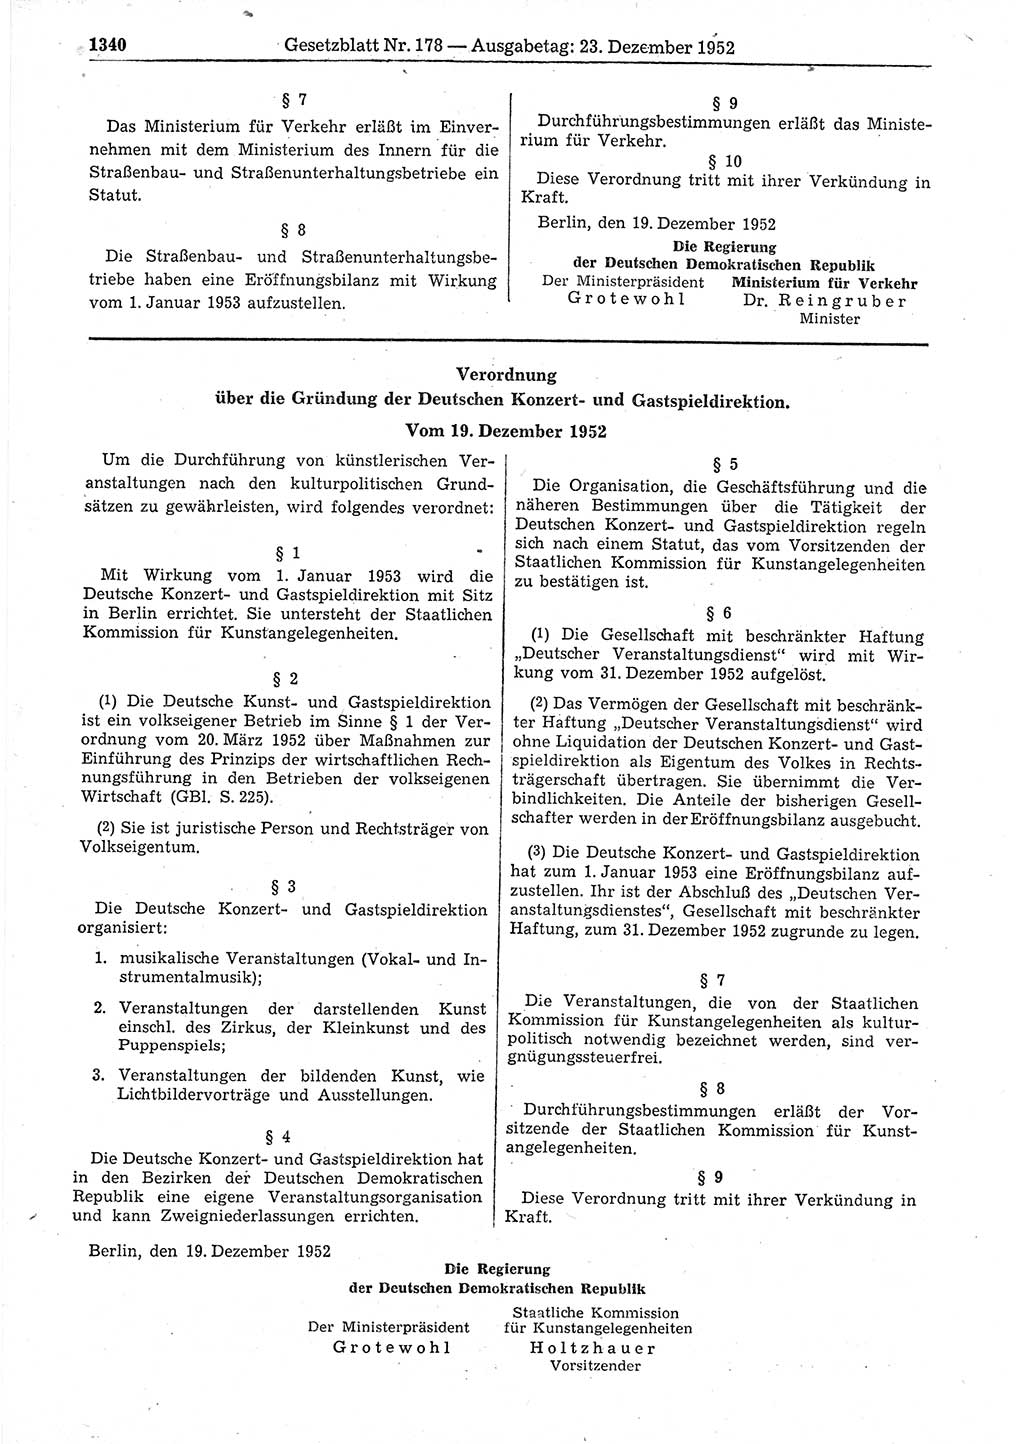 Gesetzblatt (GBl.) der Deutschen Demokratischen Republik (DDR) 1952, Seite 1340 (GBl. DDR 1952, S. 1340)